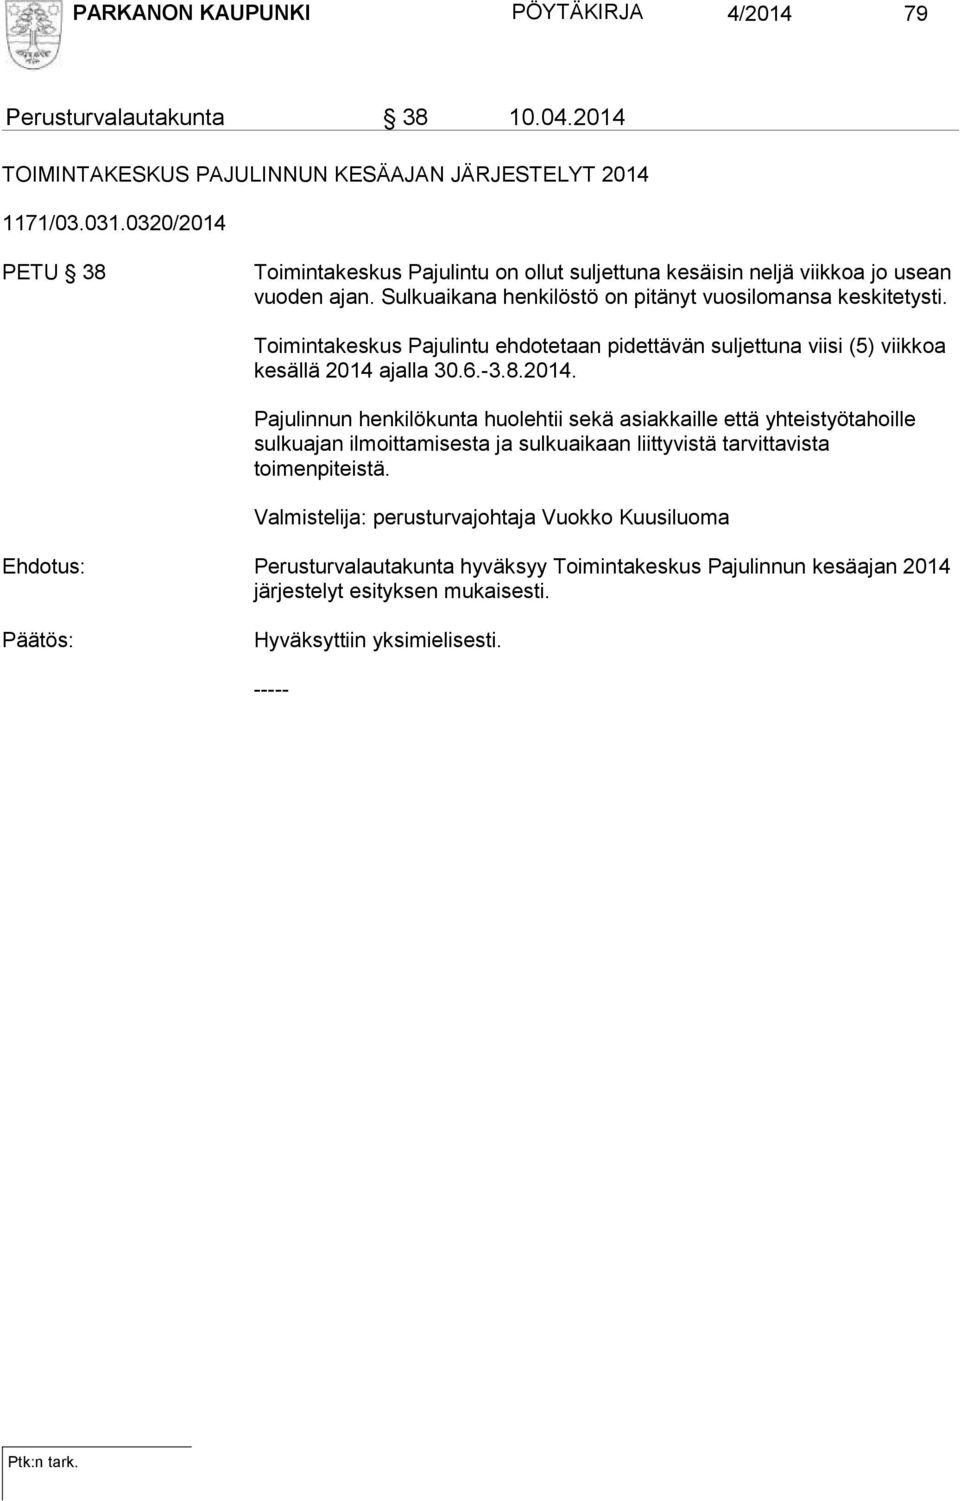 Toimintakeskus Pajulintu ehdotetaan pidettävän suljettuna viisi (5) viikkoa kesällä 2014 